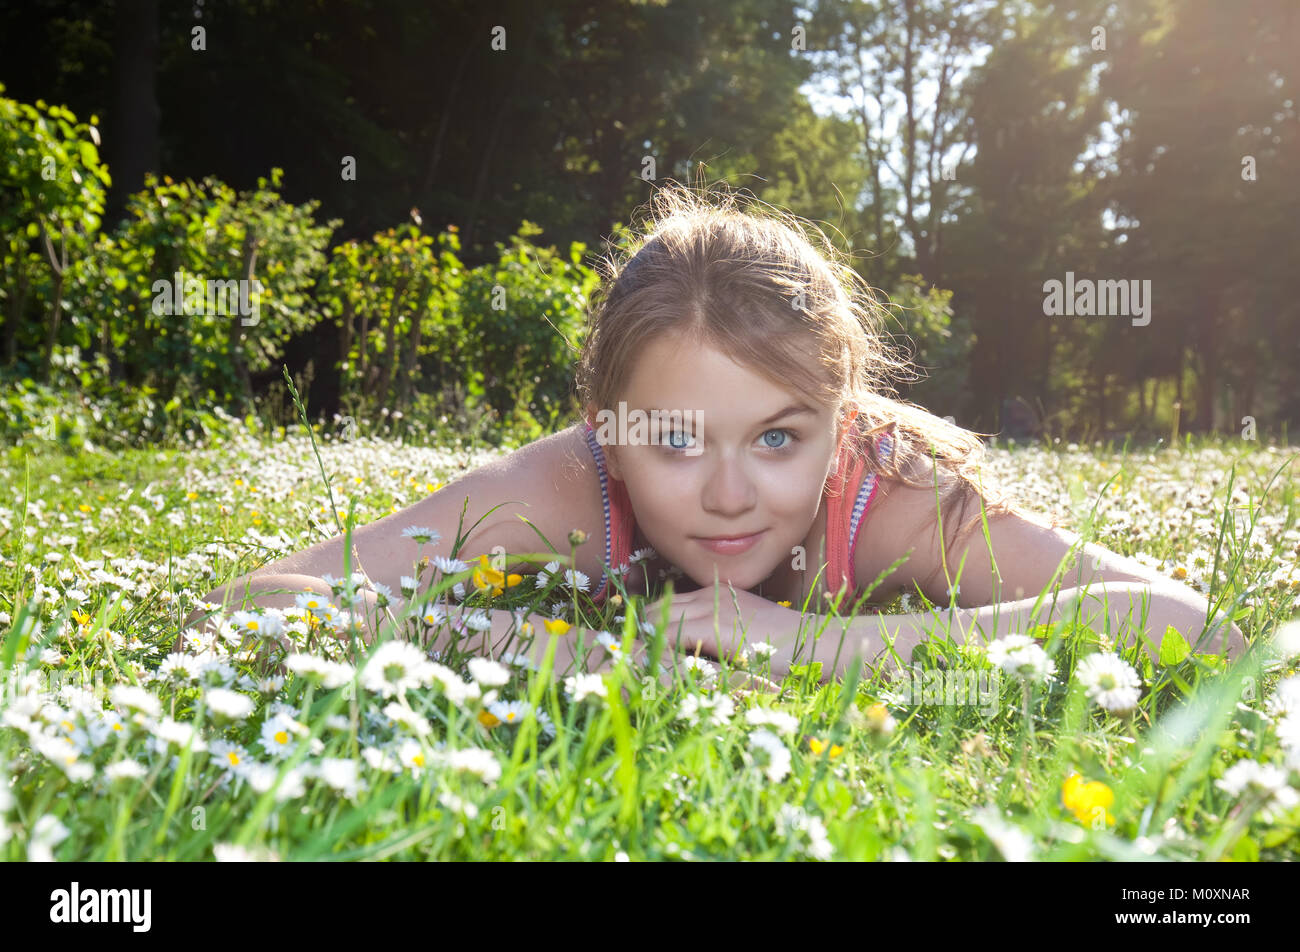 beautiful child lying on green grass Stock Photo